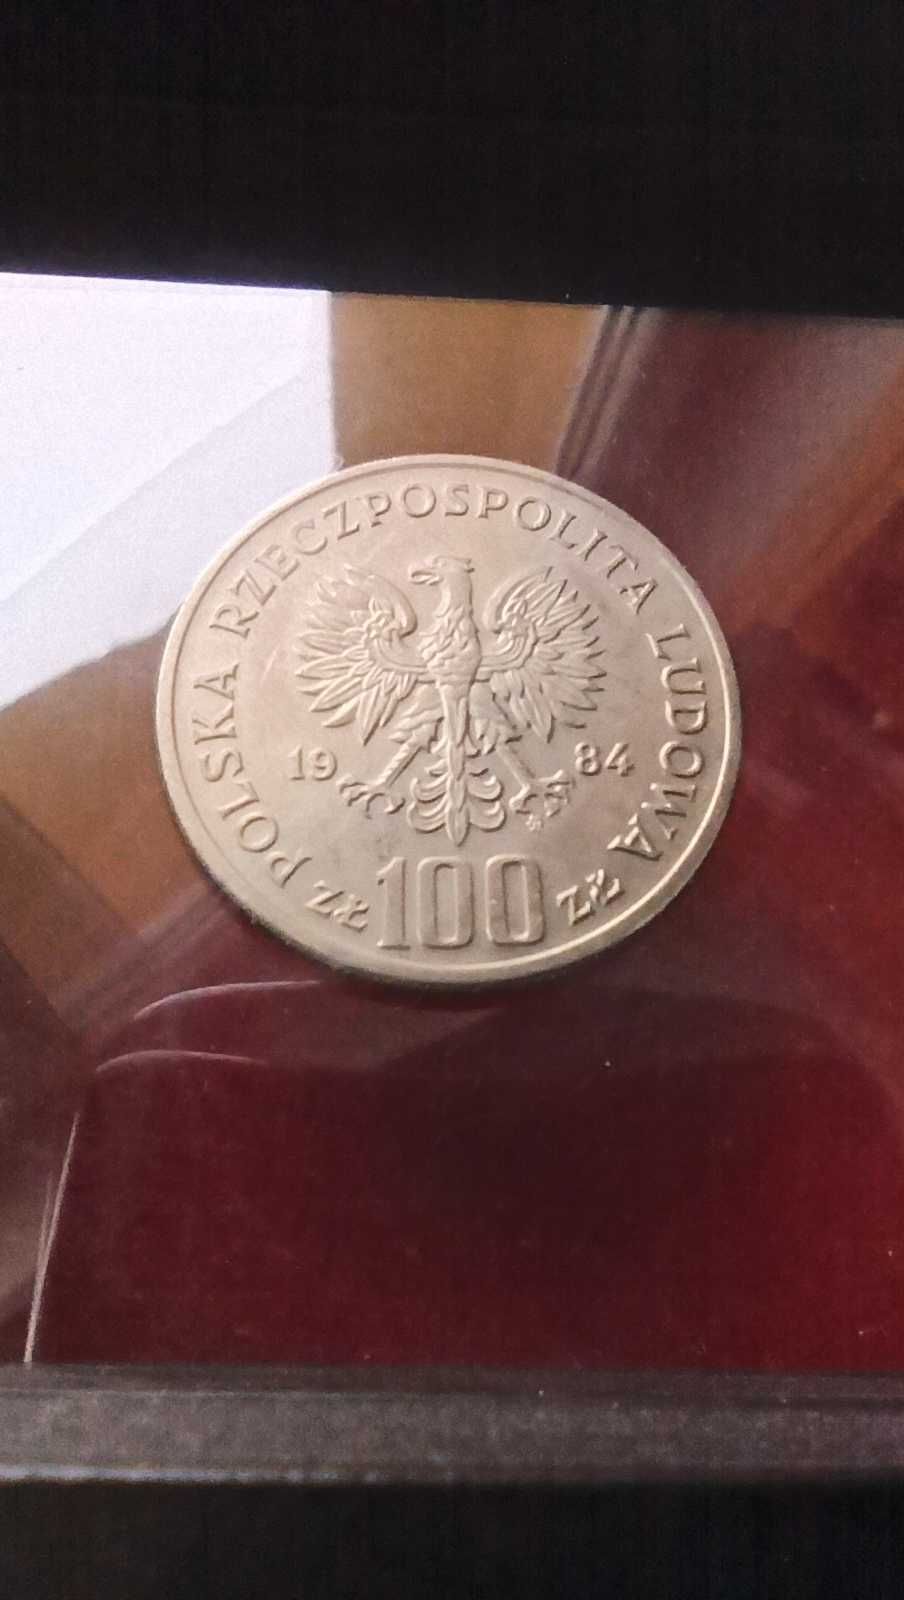 PRL, Moneta 100 złotych 40 Lat PRL 1984r. / Mennicza